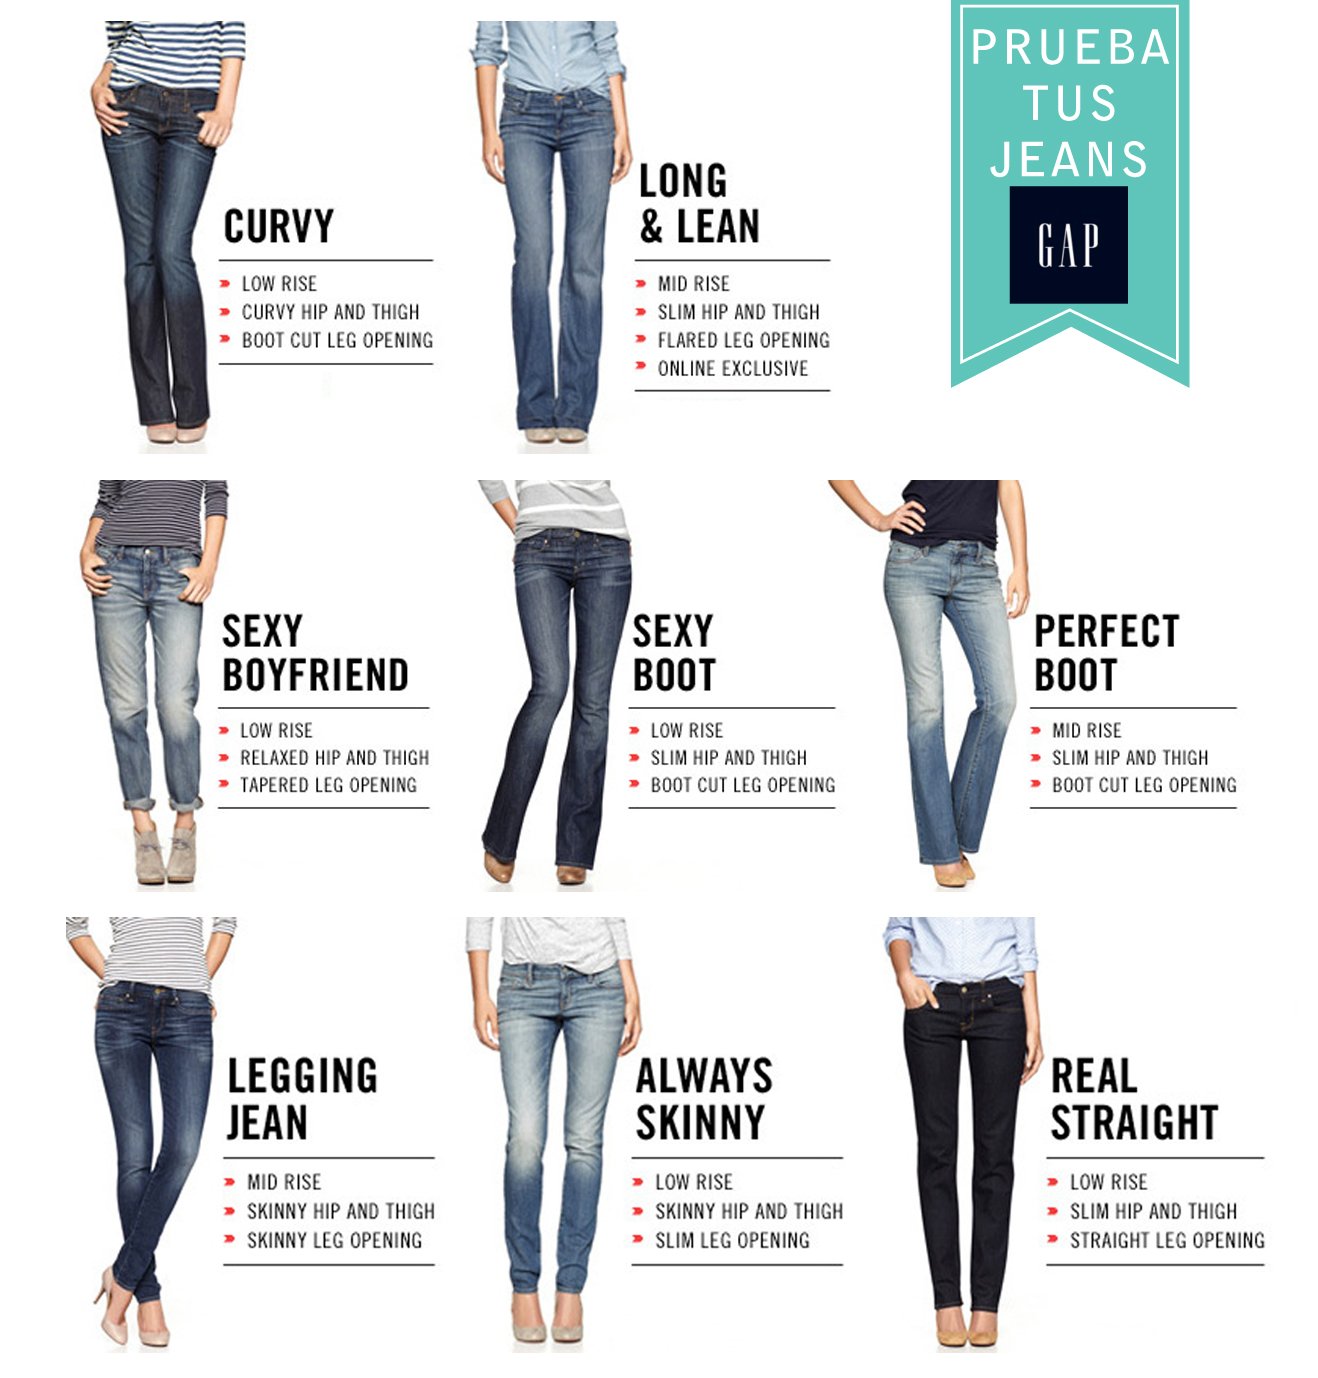 Wide leg джинсы это. Типы джинсов женских. Модели джинс названия. Модели джинс женских названия. Формы джинс женских.